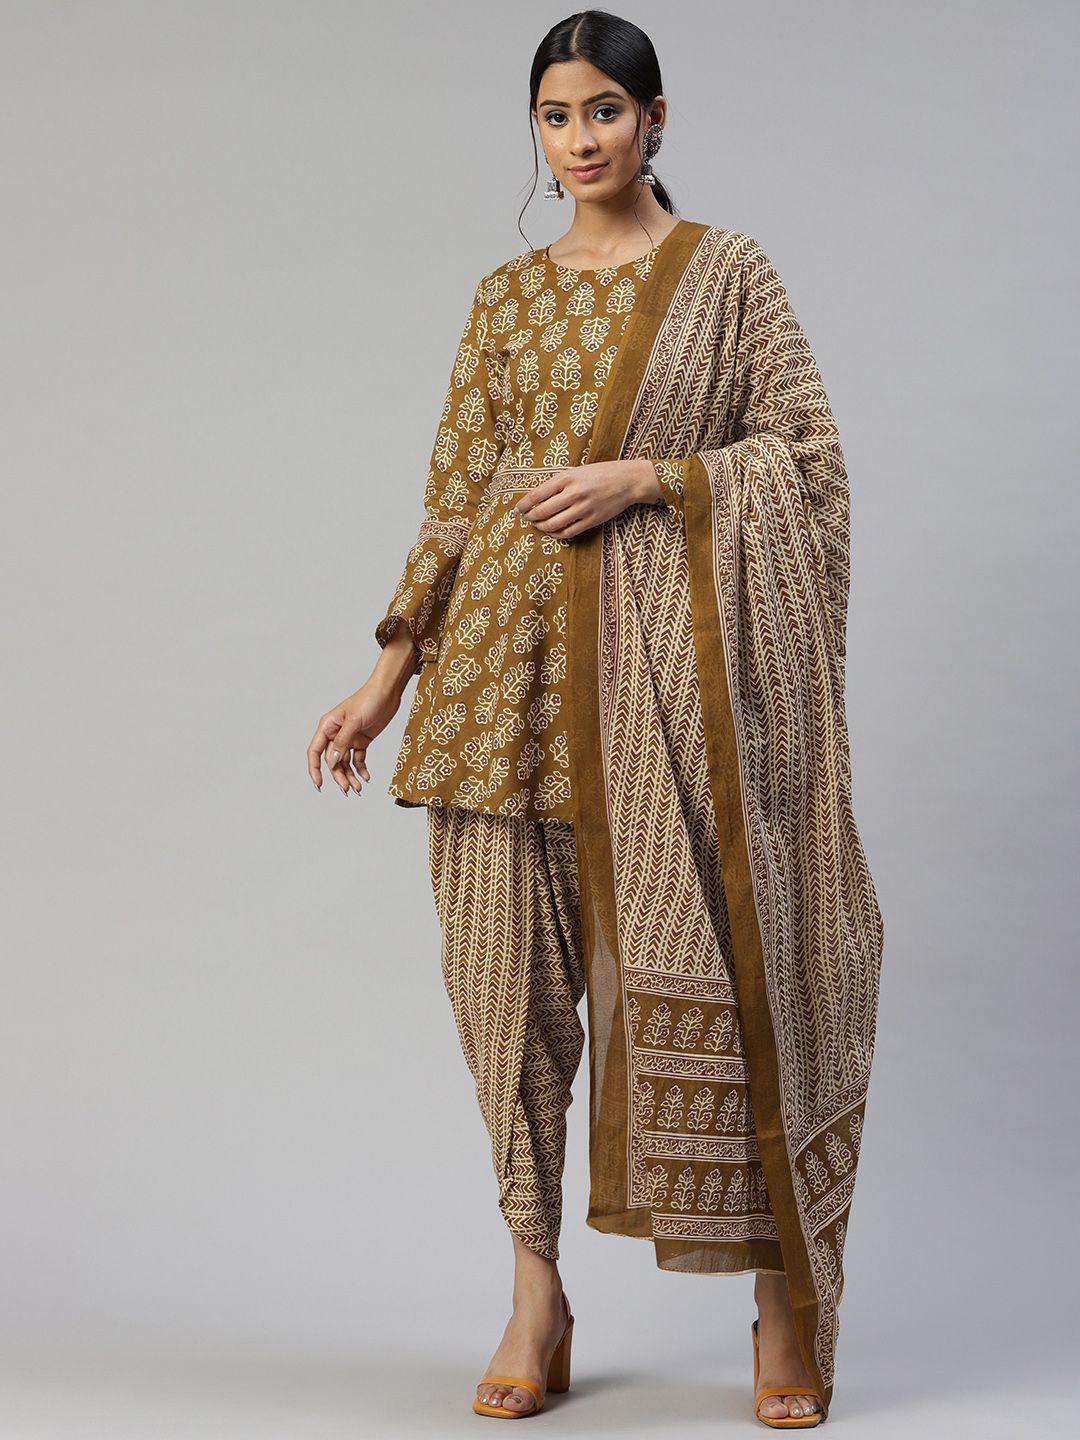 svarchi women mustard yellow pure cotton motifs printed kurta with dhoti pants & dupatta